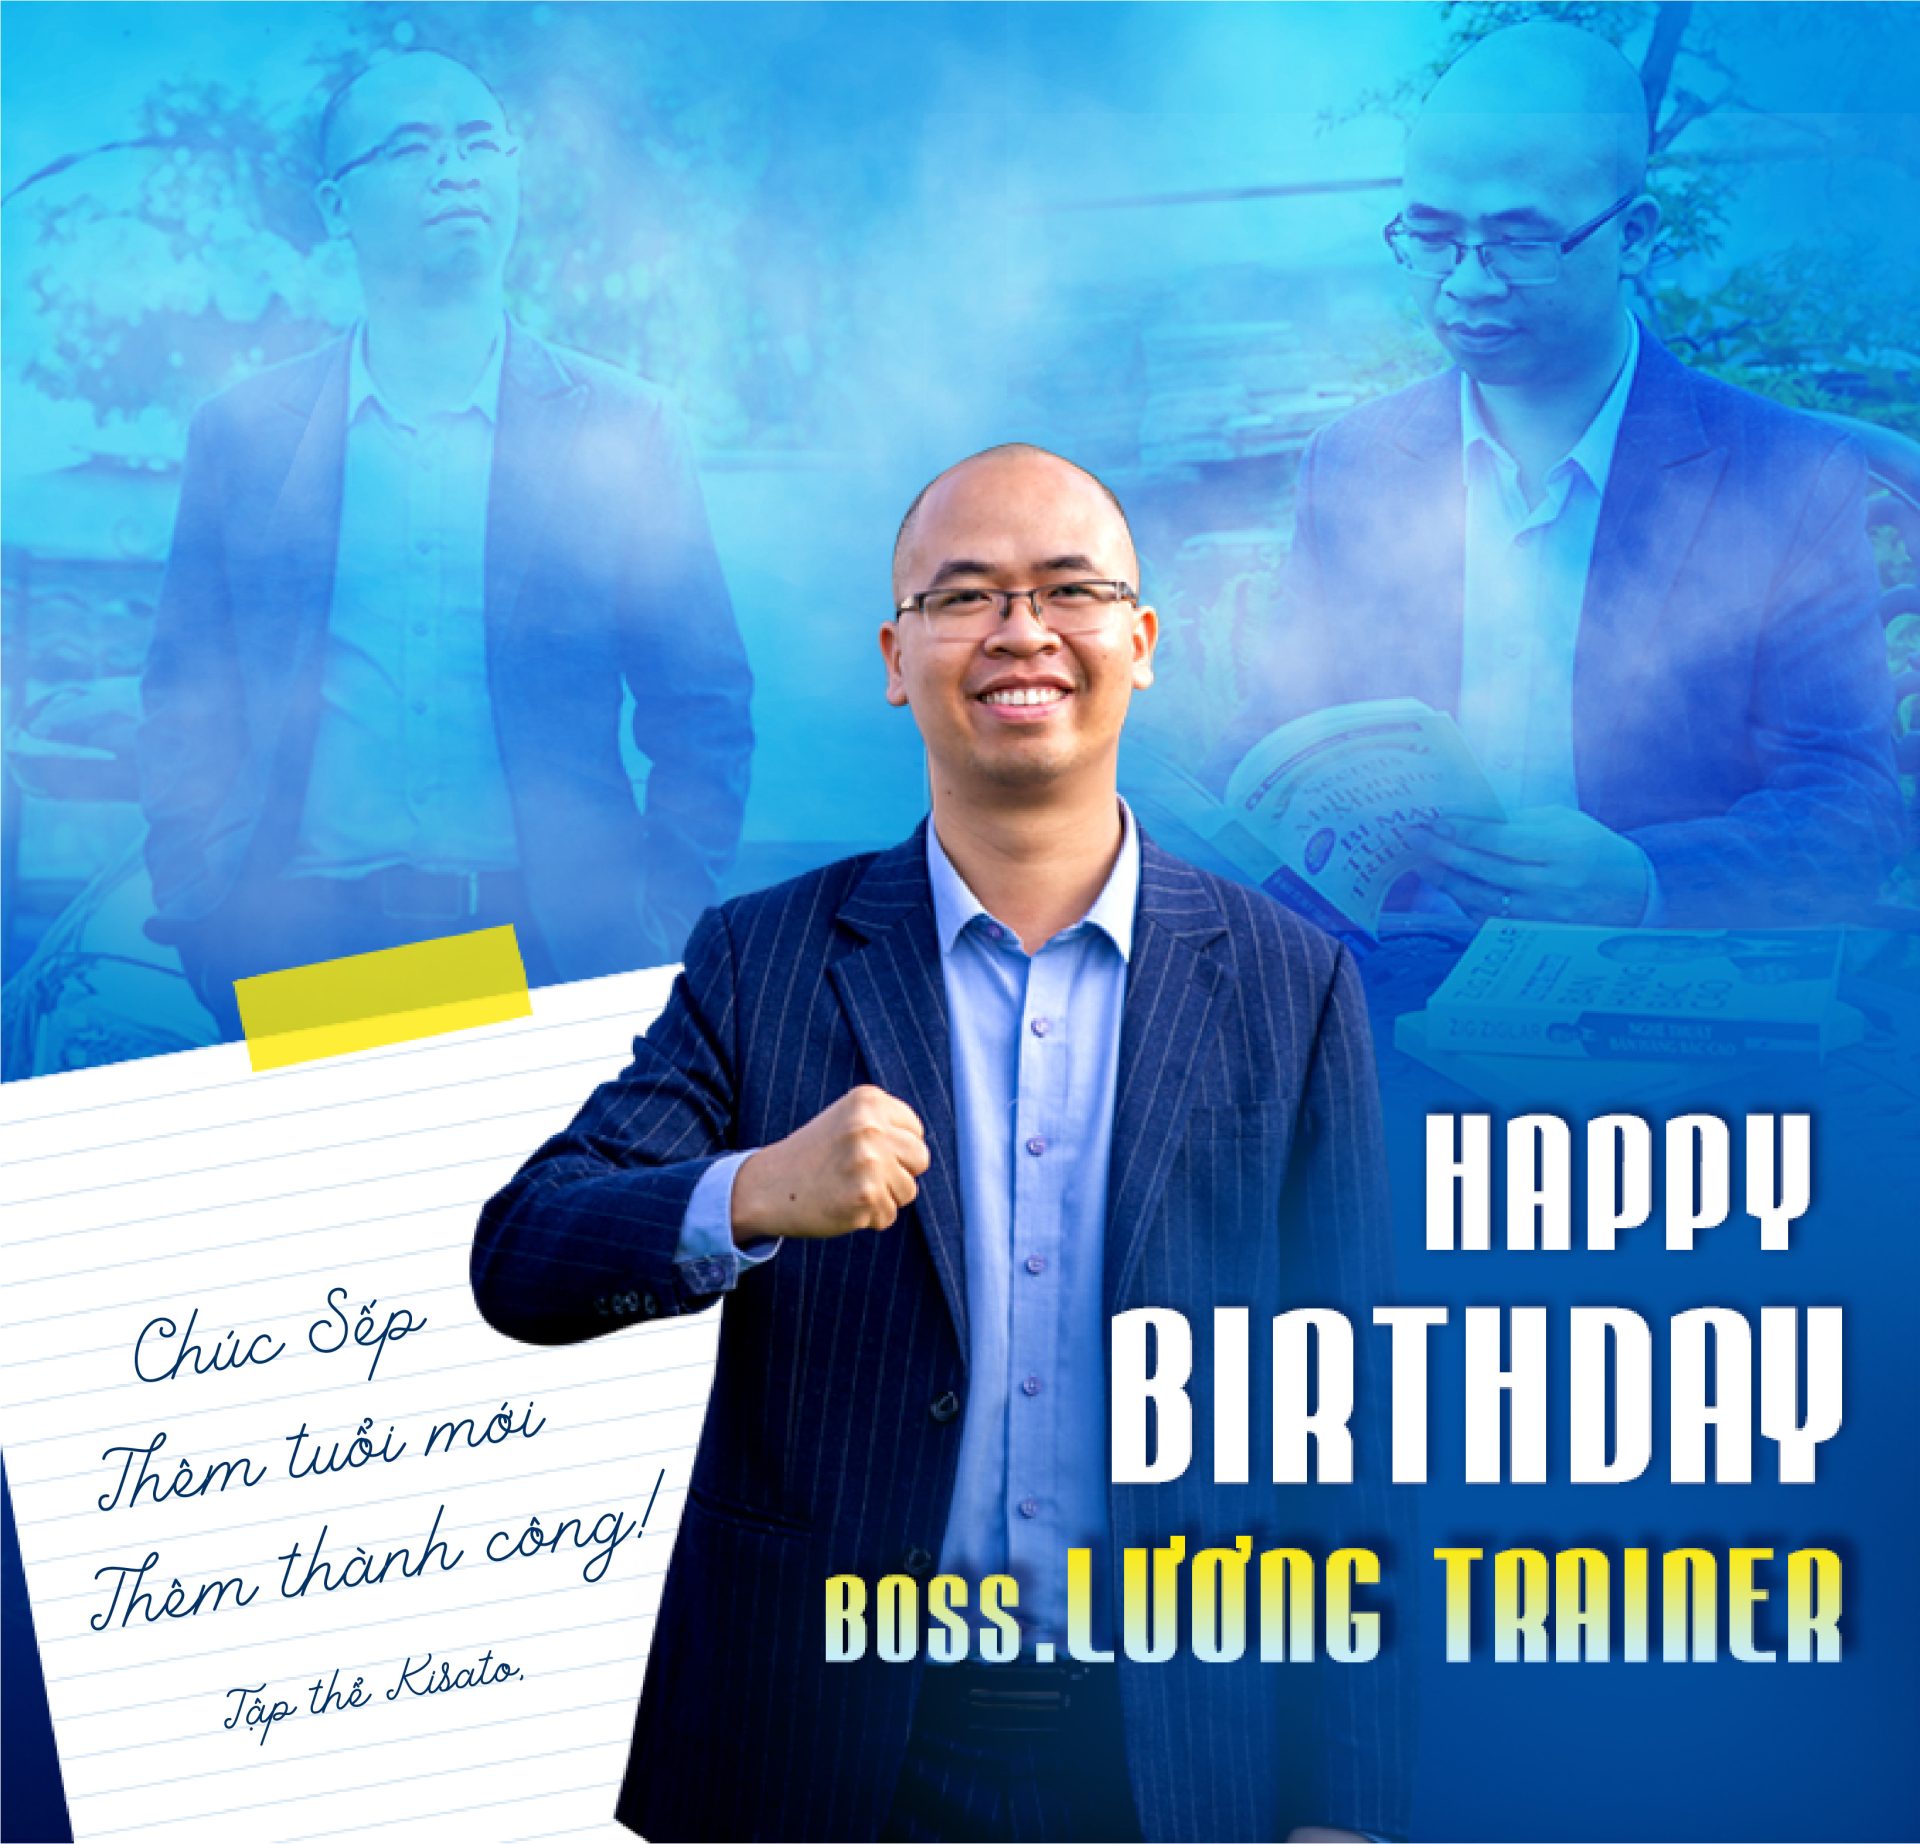 Chúc mừng sinh nhật Sếp Lương Trainer